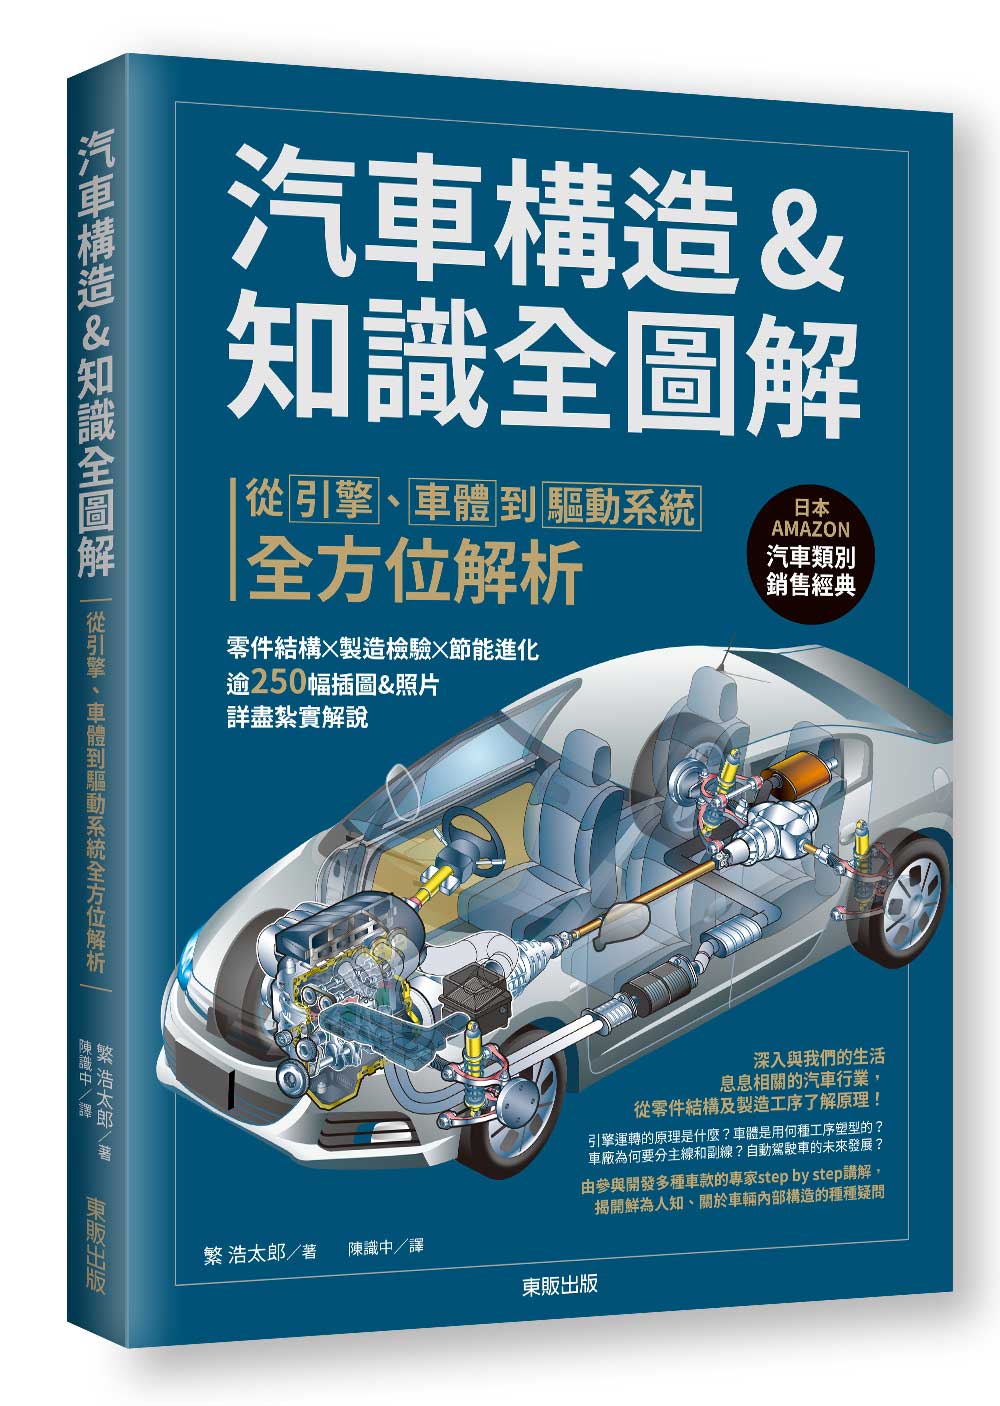 汽車構造u0026知識全圖解: 從引擎、車體到驅動系統全方位解析| 誠品線上